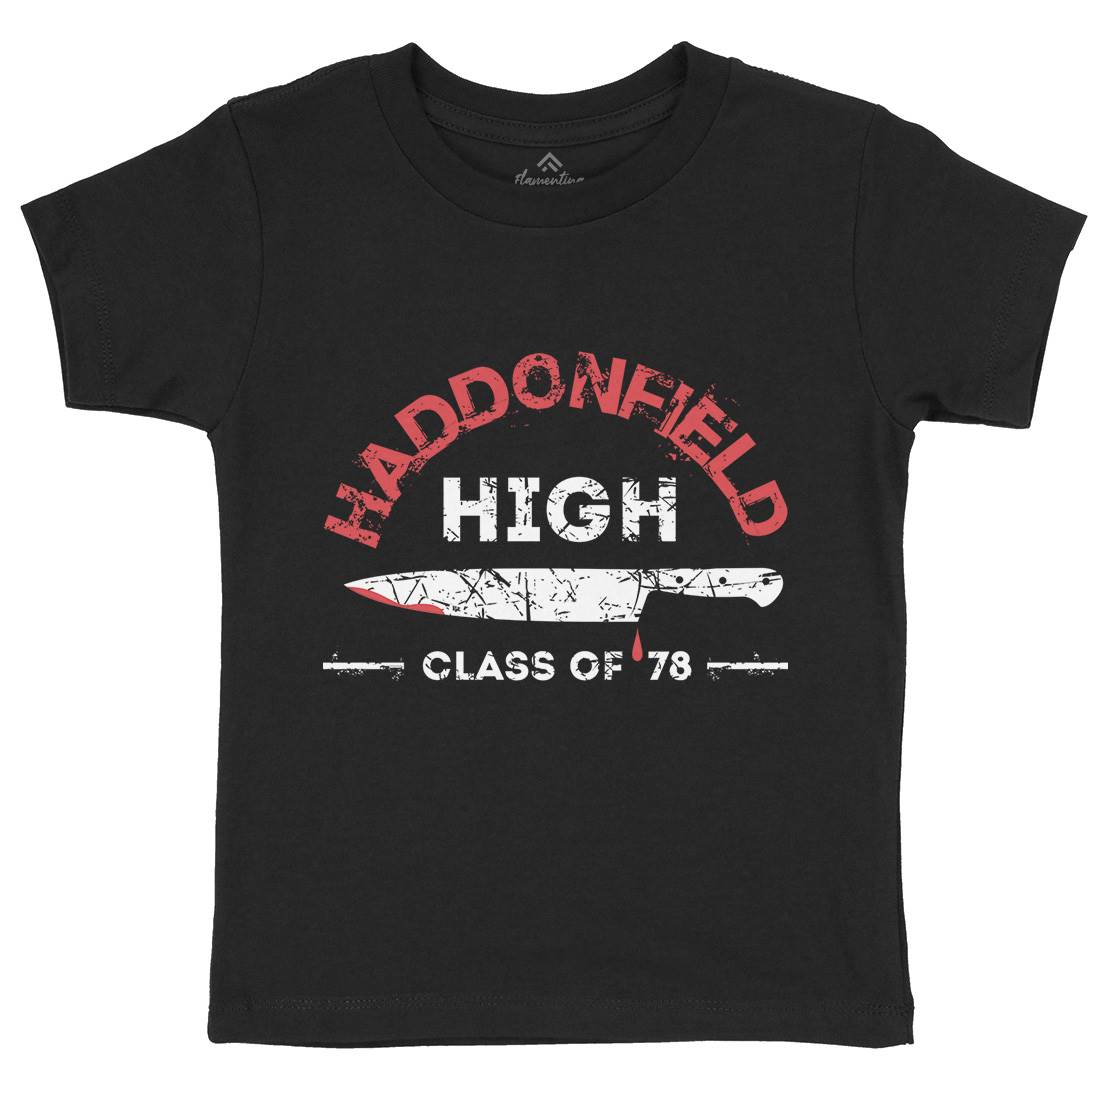 Haddonfield High Kids Crew Neck T-Shirt Horror D371